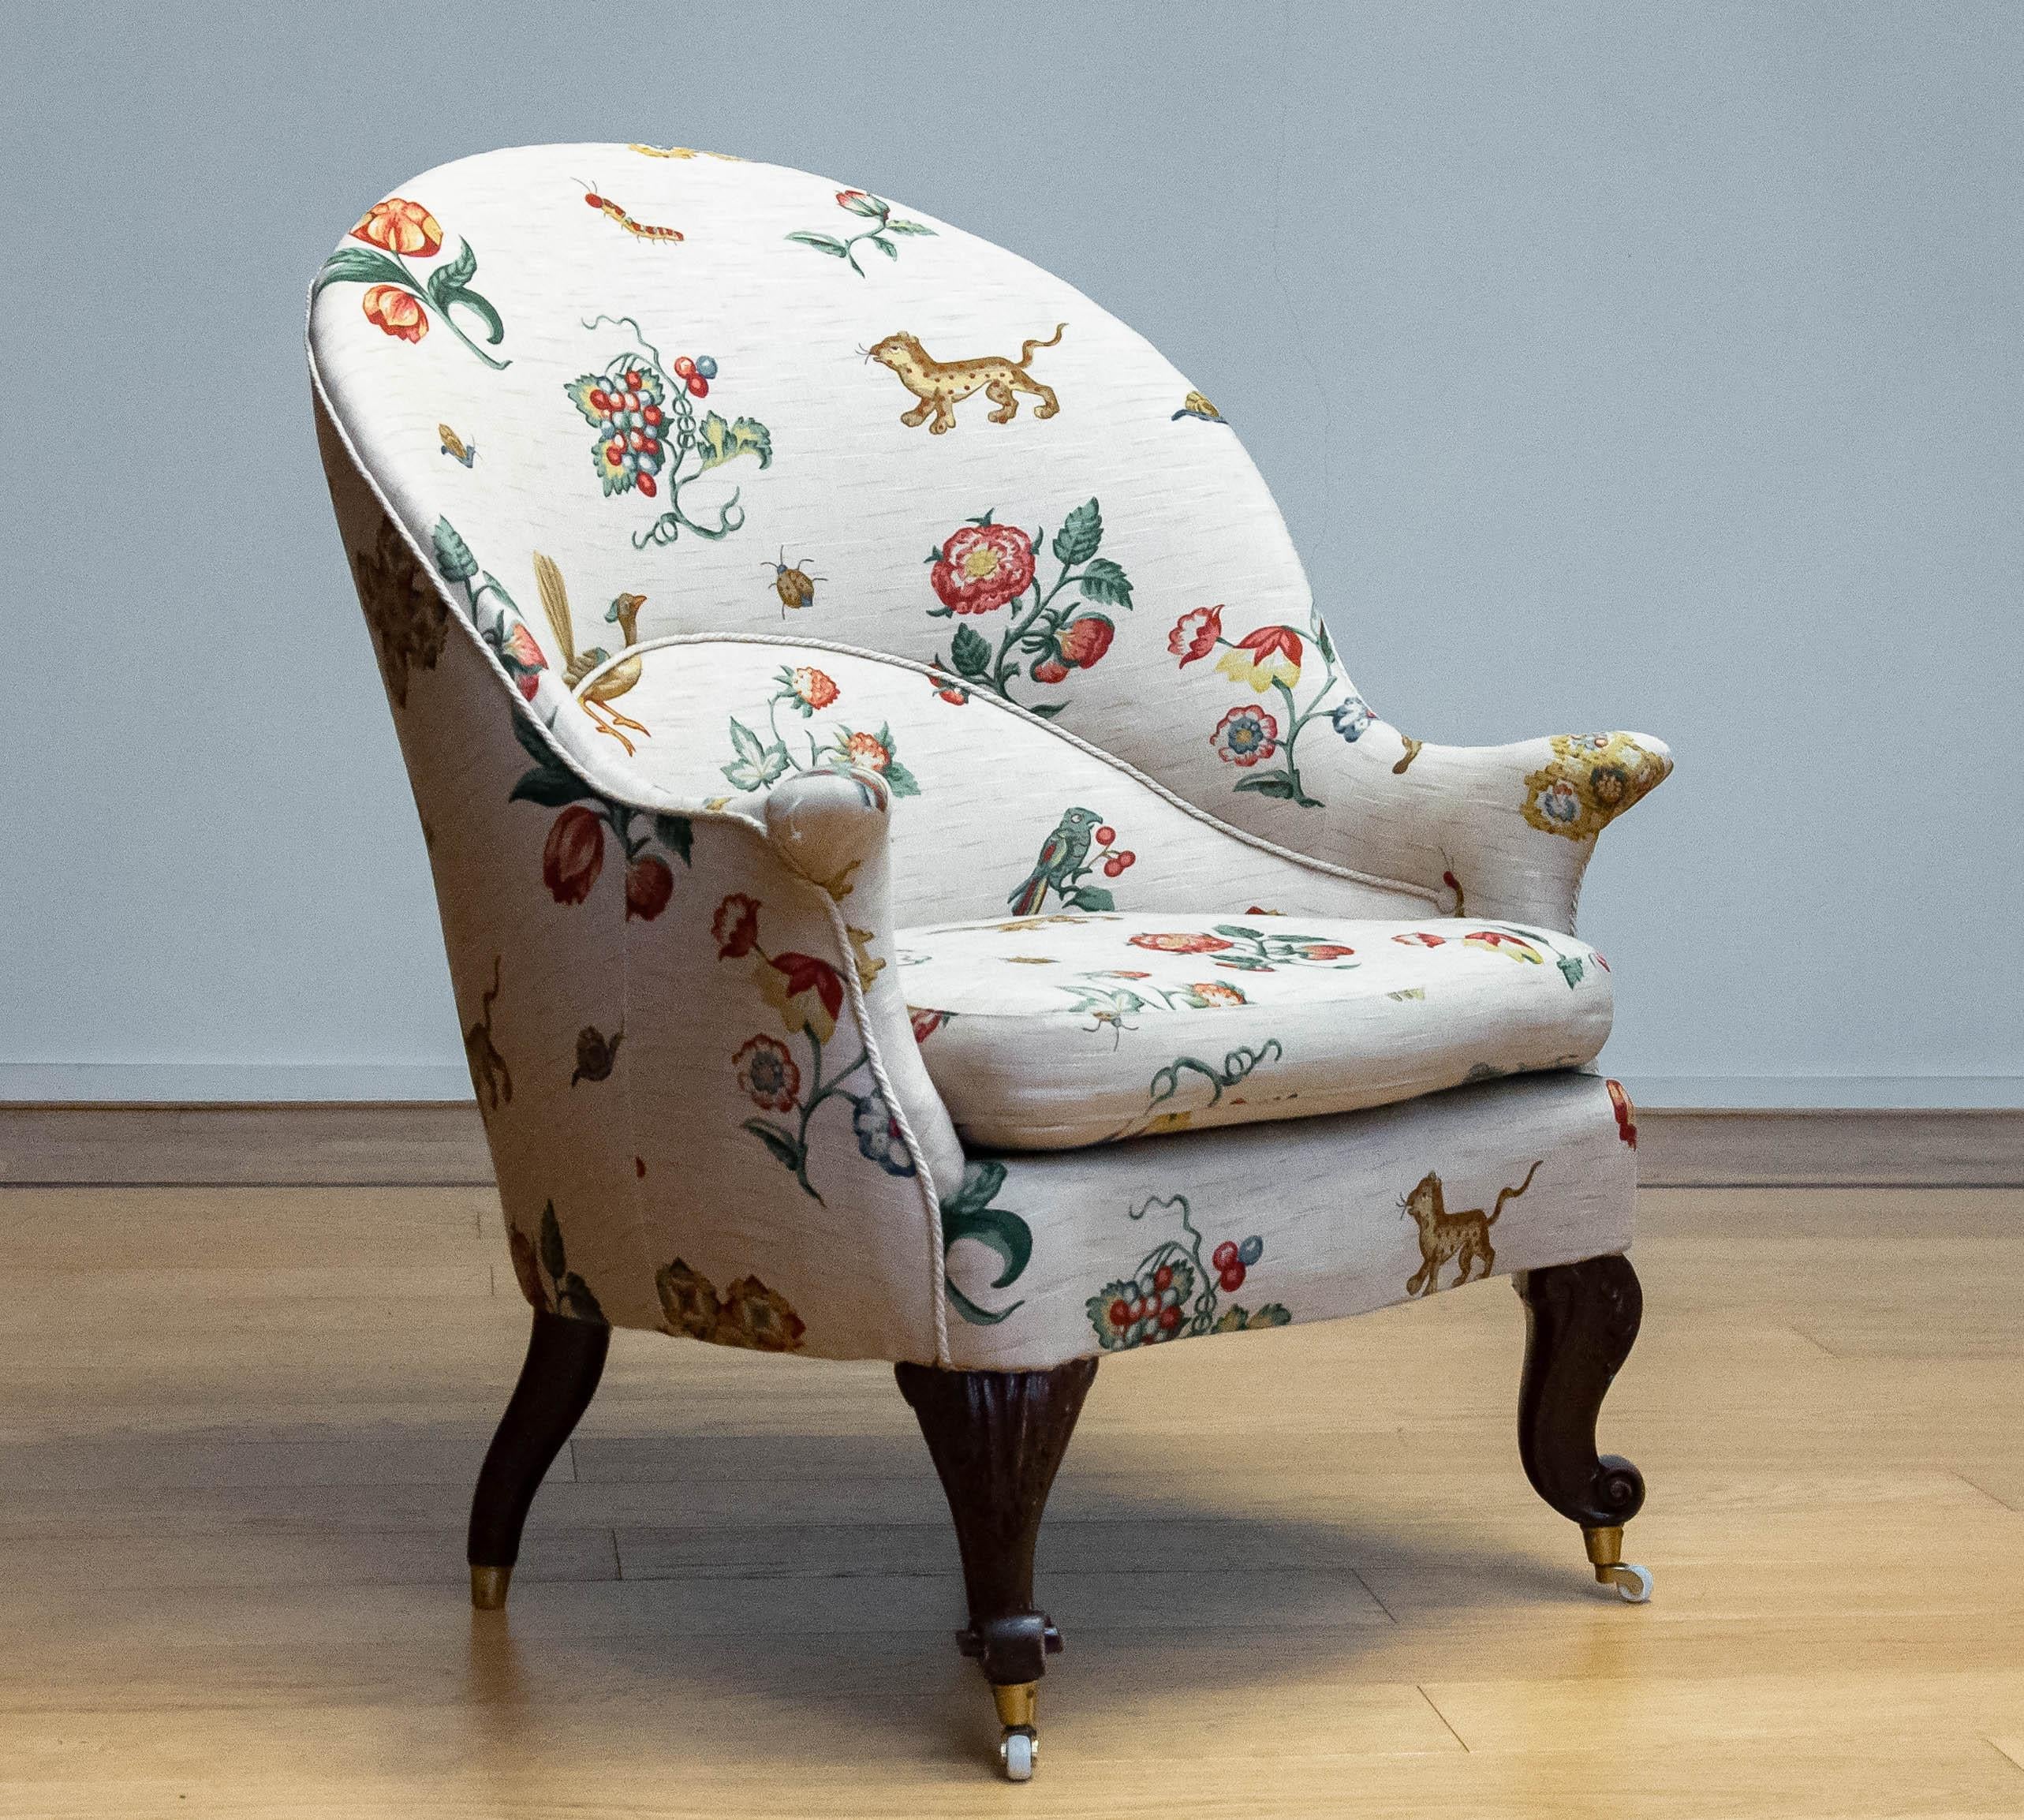 Magnifique fauteuil tapissé d'un tissu en lin flore et faune / fantaisie. Le large dossier en forme d'arc combiné aux fins accoudoirs en forme de corne reposant sur les riches pieds cabriole sculptés fait de cette chaise une pièce maîtresse absolue